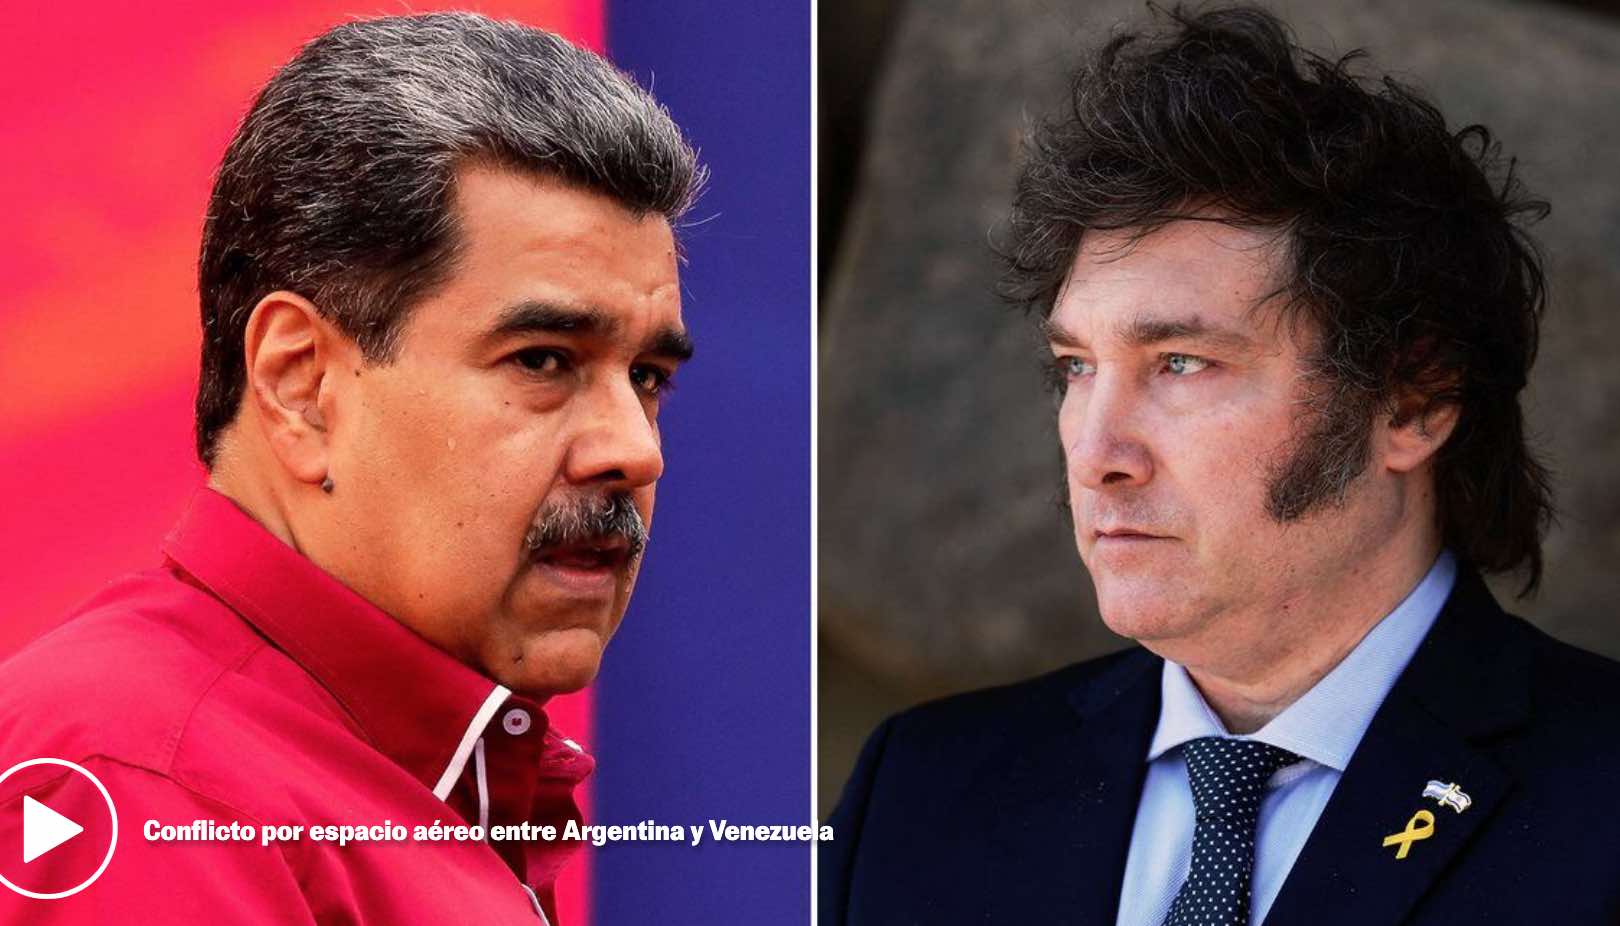 Milei vs. Maduro: Conflicto por cierre de espacio a?reo entre Venezuela y Argentina